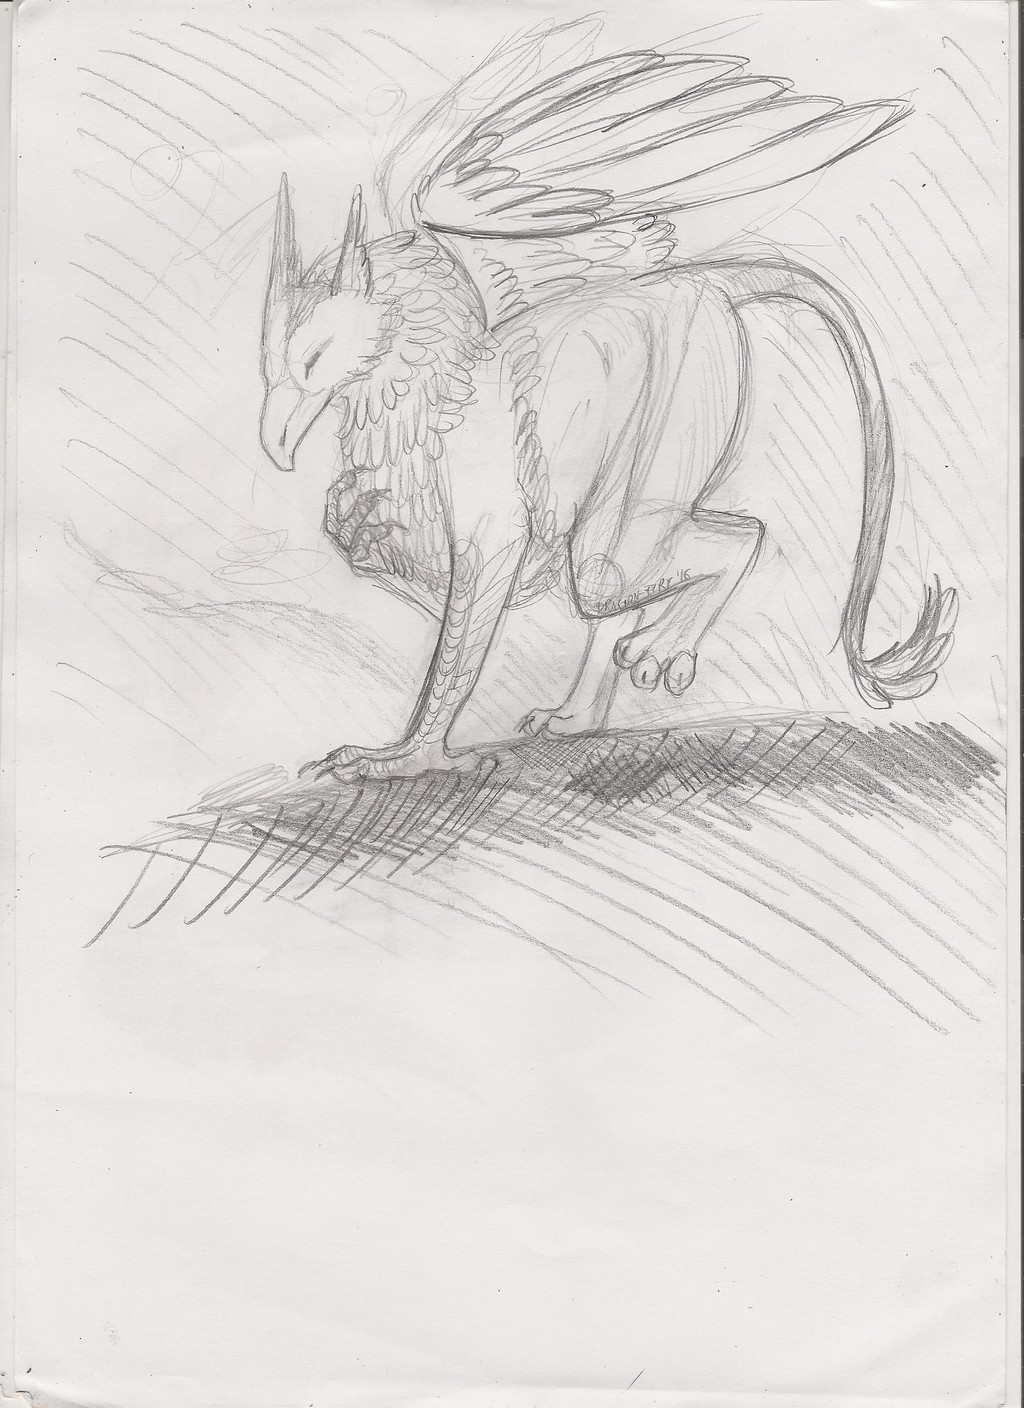 Griffin sketch